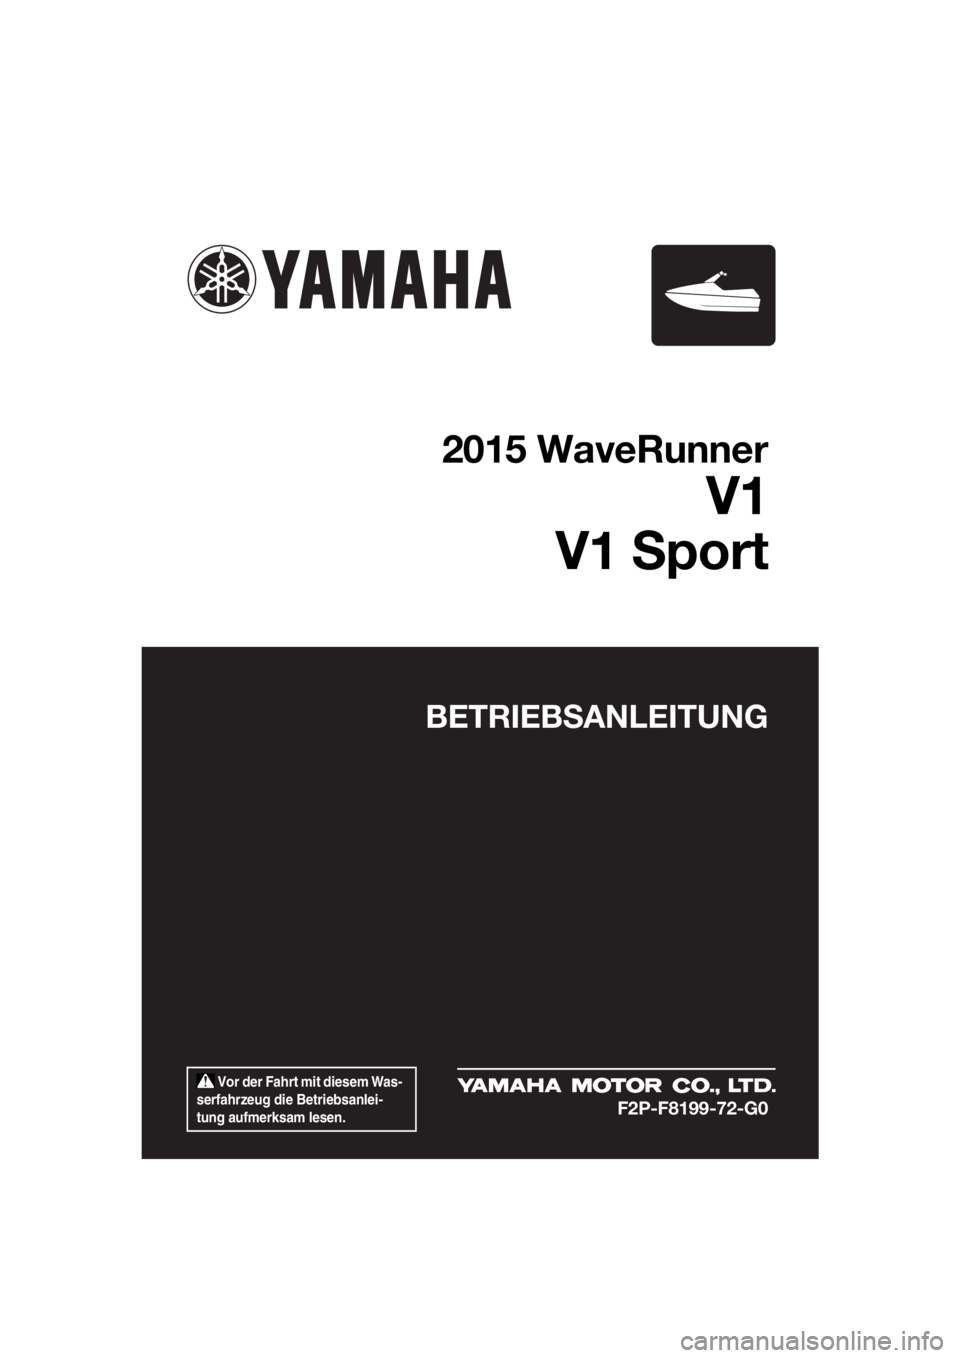 YAMAHA V1 SPORT 2015  Betriebsanleitungen (in German)  Vor der Fahrt mit diesem Was-
serfahrzeug die Betriebsanlei-
tung aufmerksam lesen.
BETRIEBSANLEITUNG
2015 WaveRunner
V1
V1 Sport
F2P-F8199-72-G0
UF2P72G0.book  Page 1  Tuesday, August 19, 2014  10:5